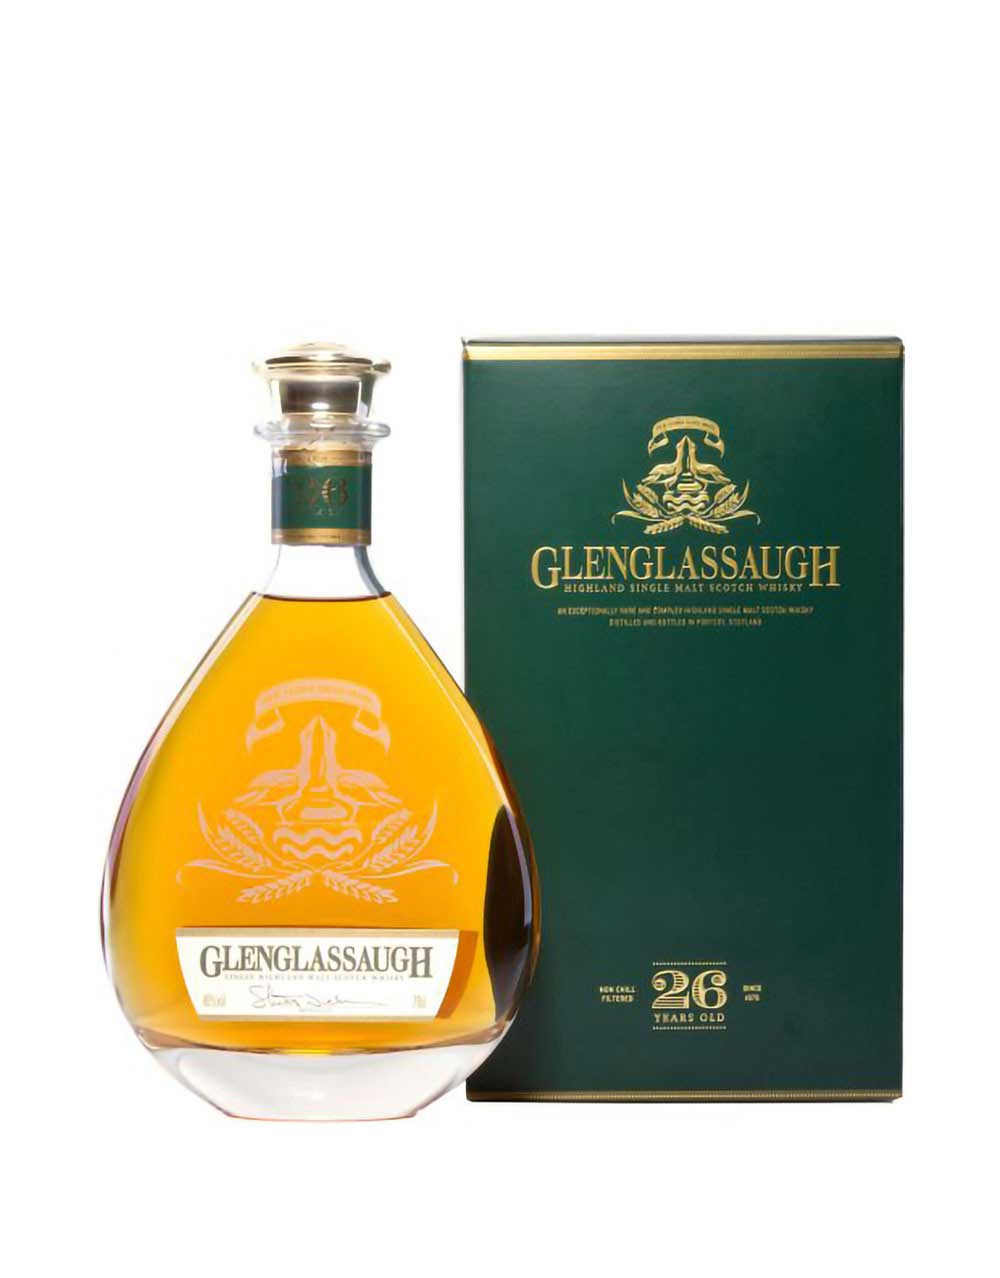 Glenglassaugh 26 Year Old Single Malt Scotch Whisky